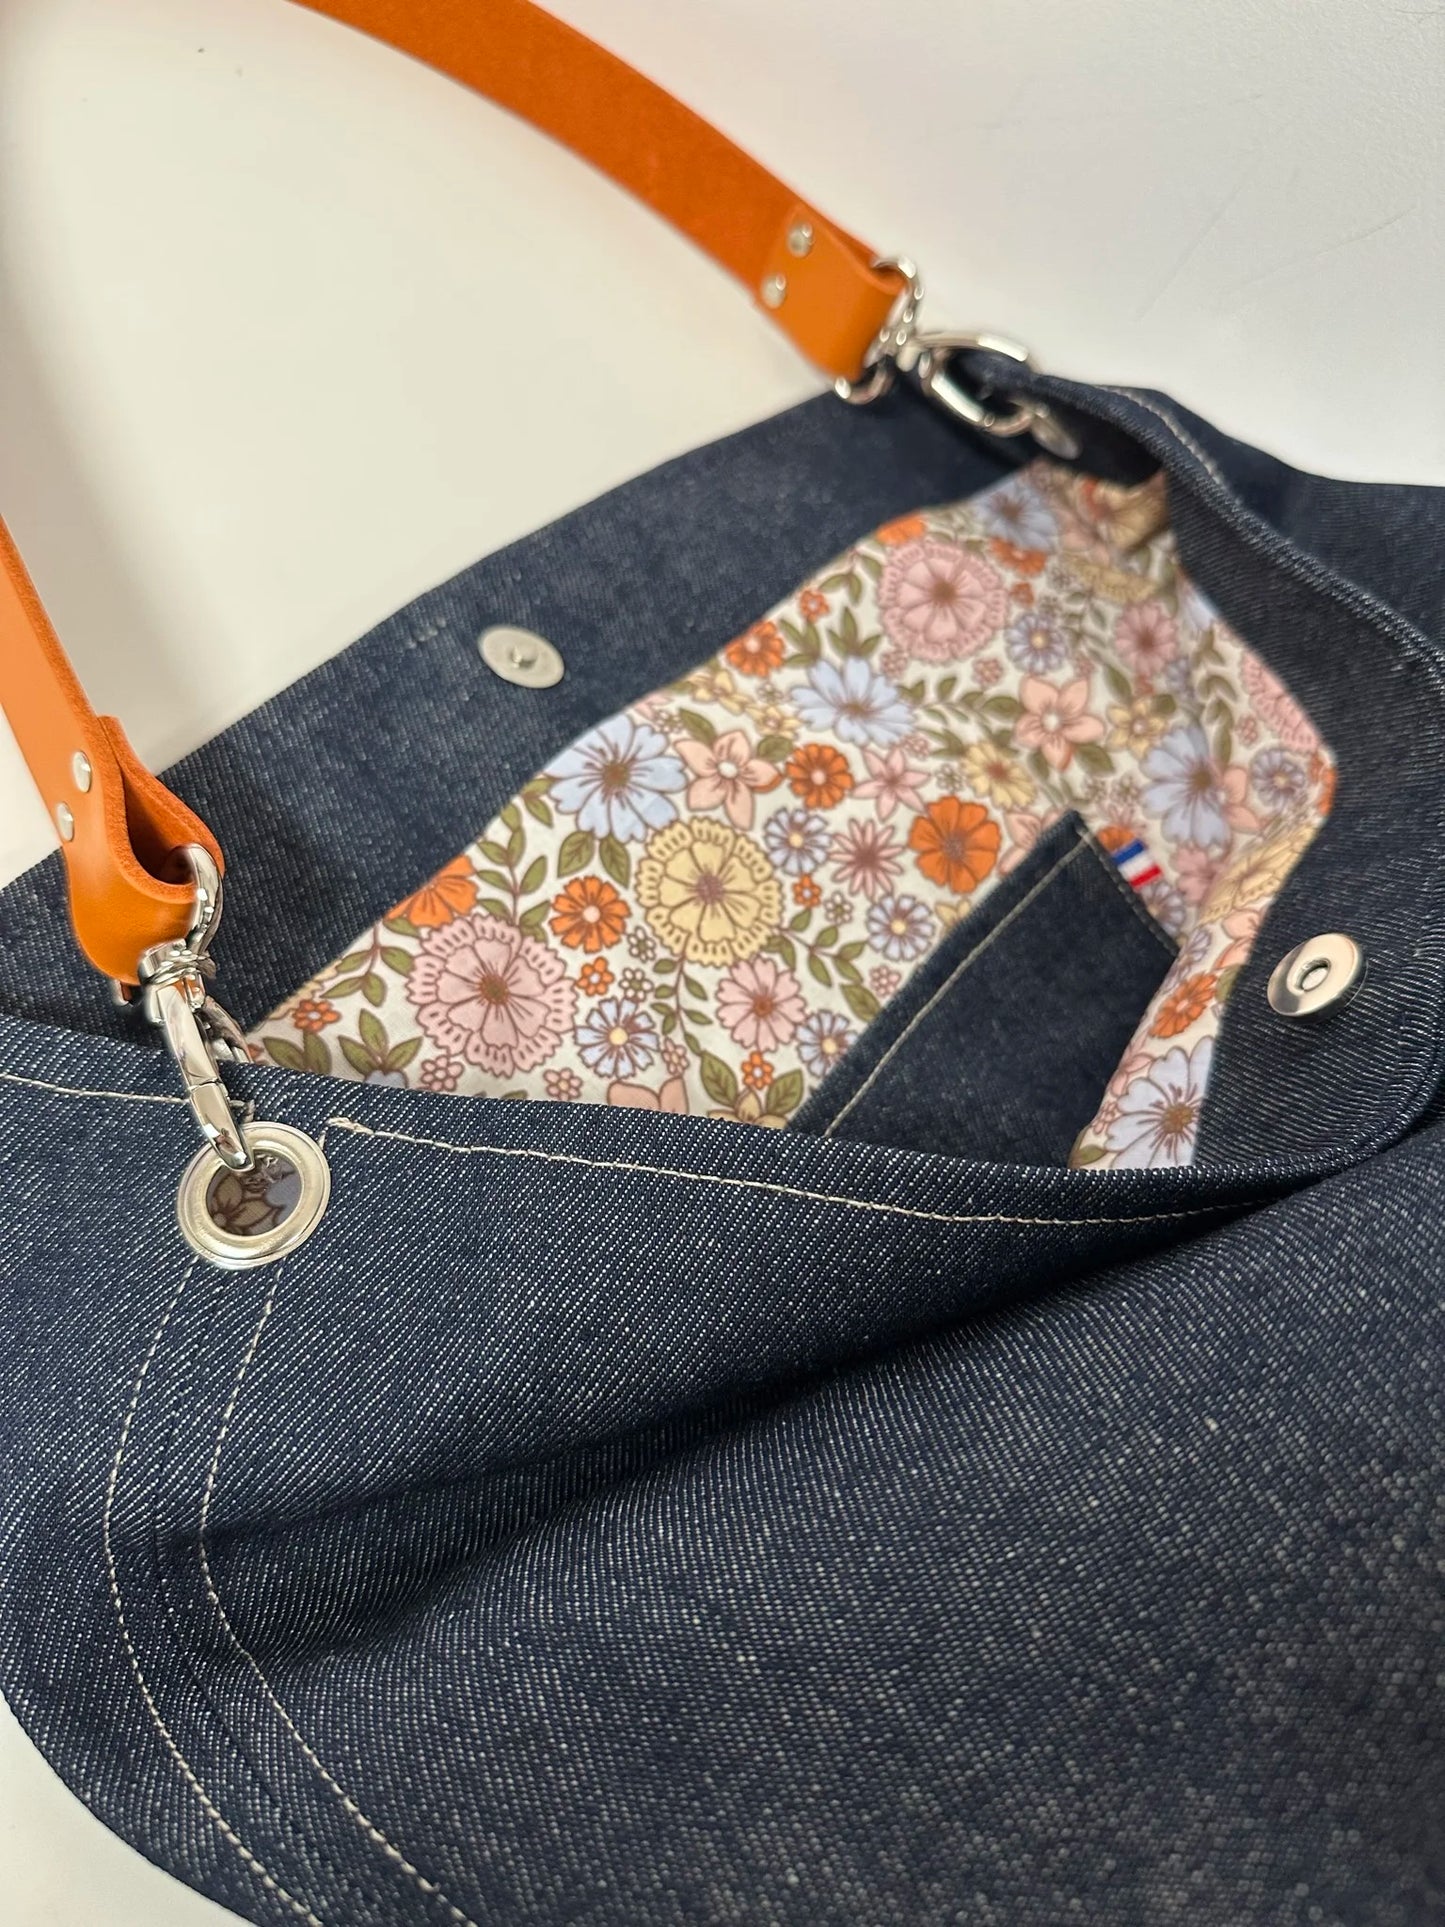 La poche plaquée intérieure du sac hobo en denim et son anse en cuir orange .